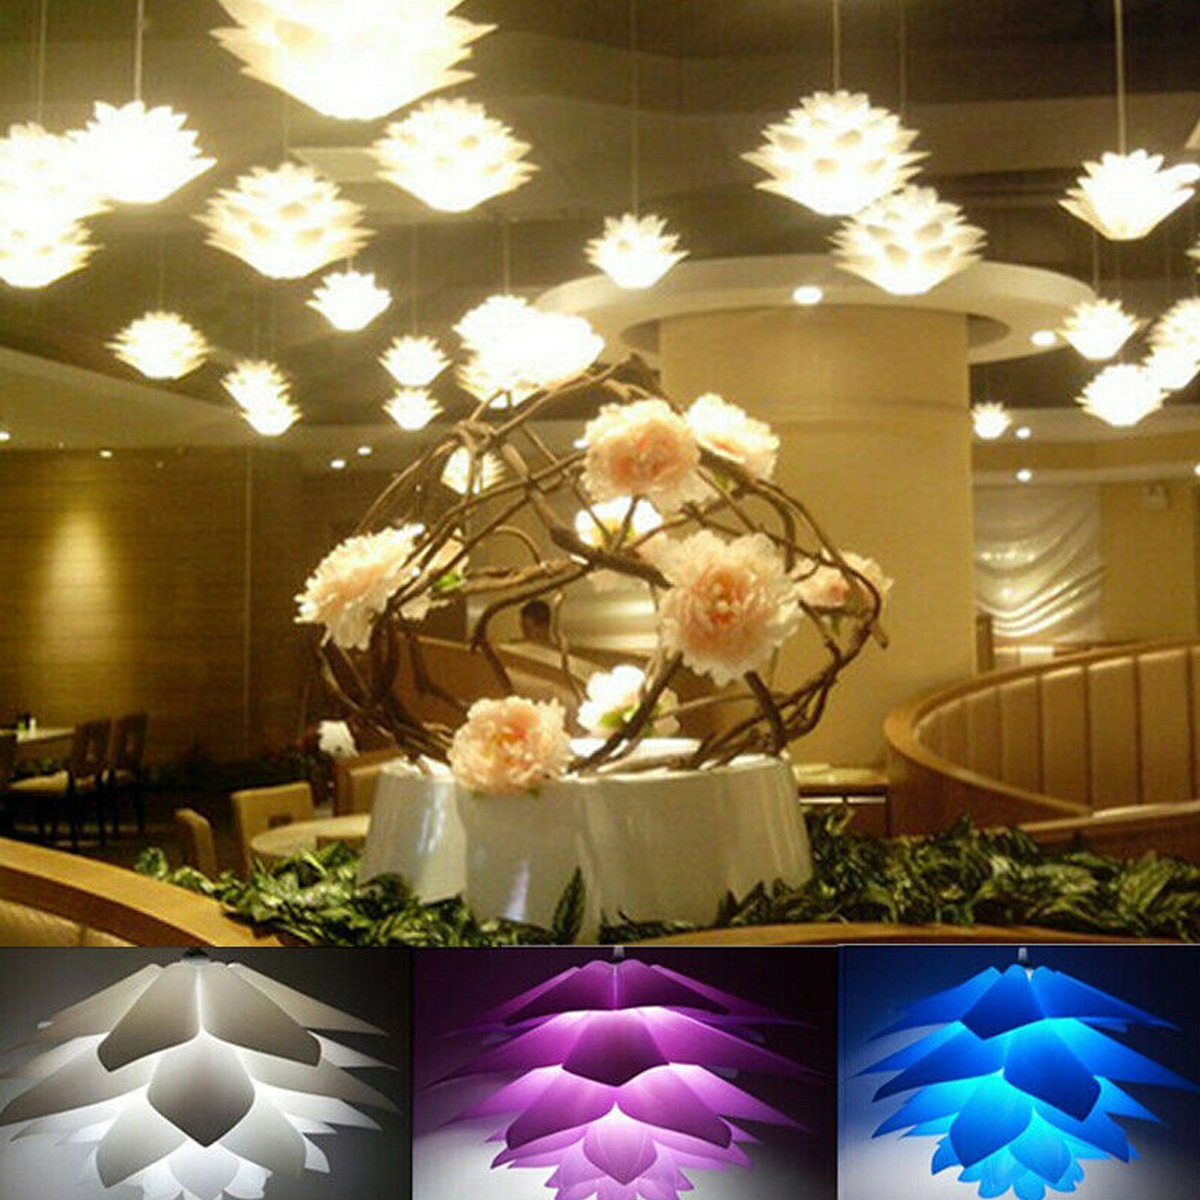 7-Colors-DIY-Lotus-Chandelier-Shape-Ceiling-Pendant-Light-Lampshade-Home-Decor-1720633-5